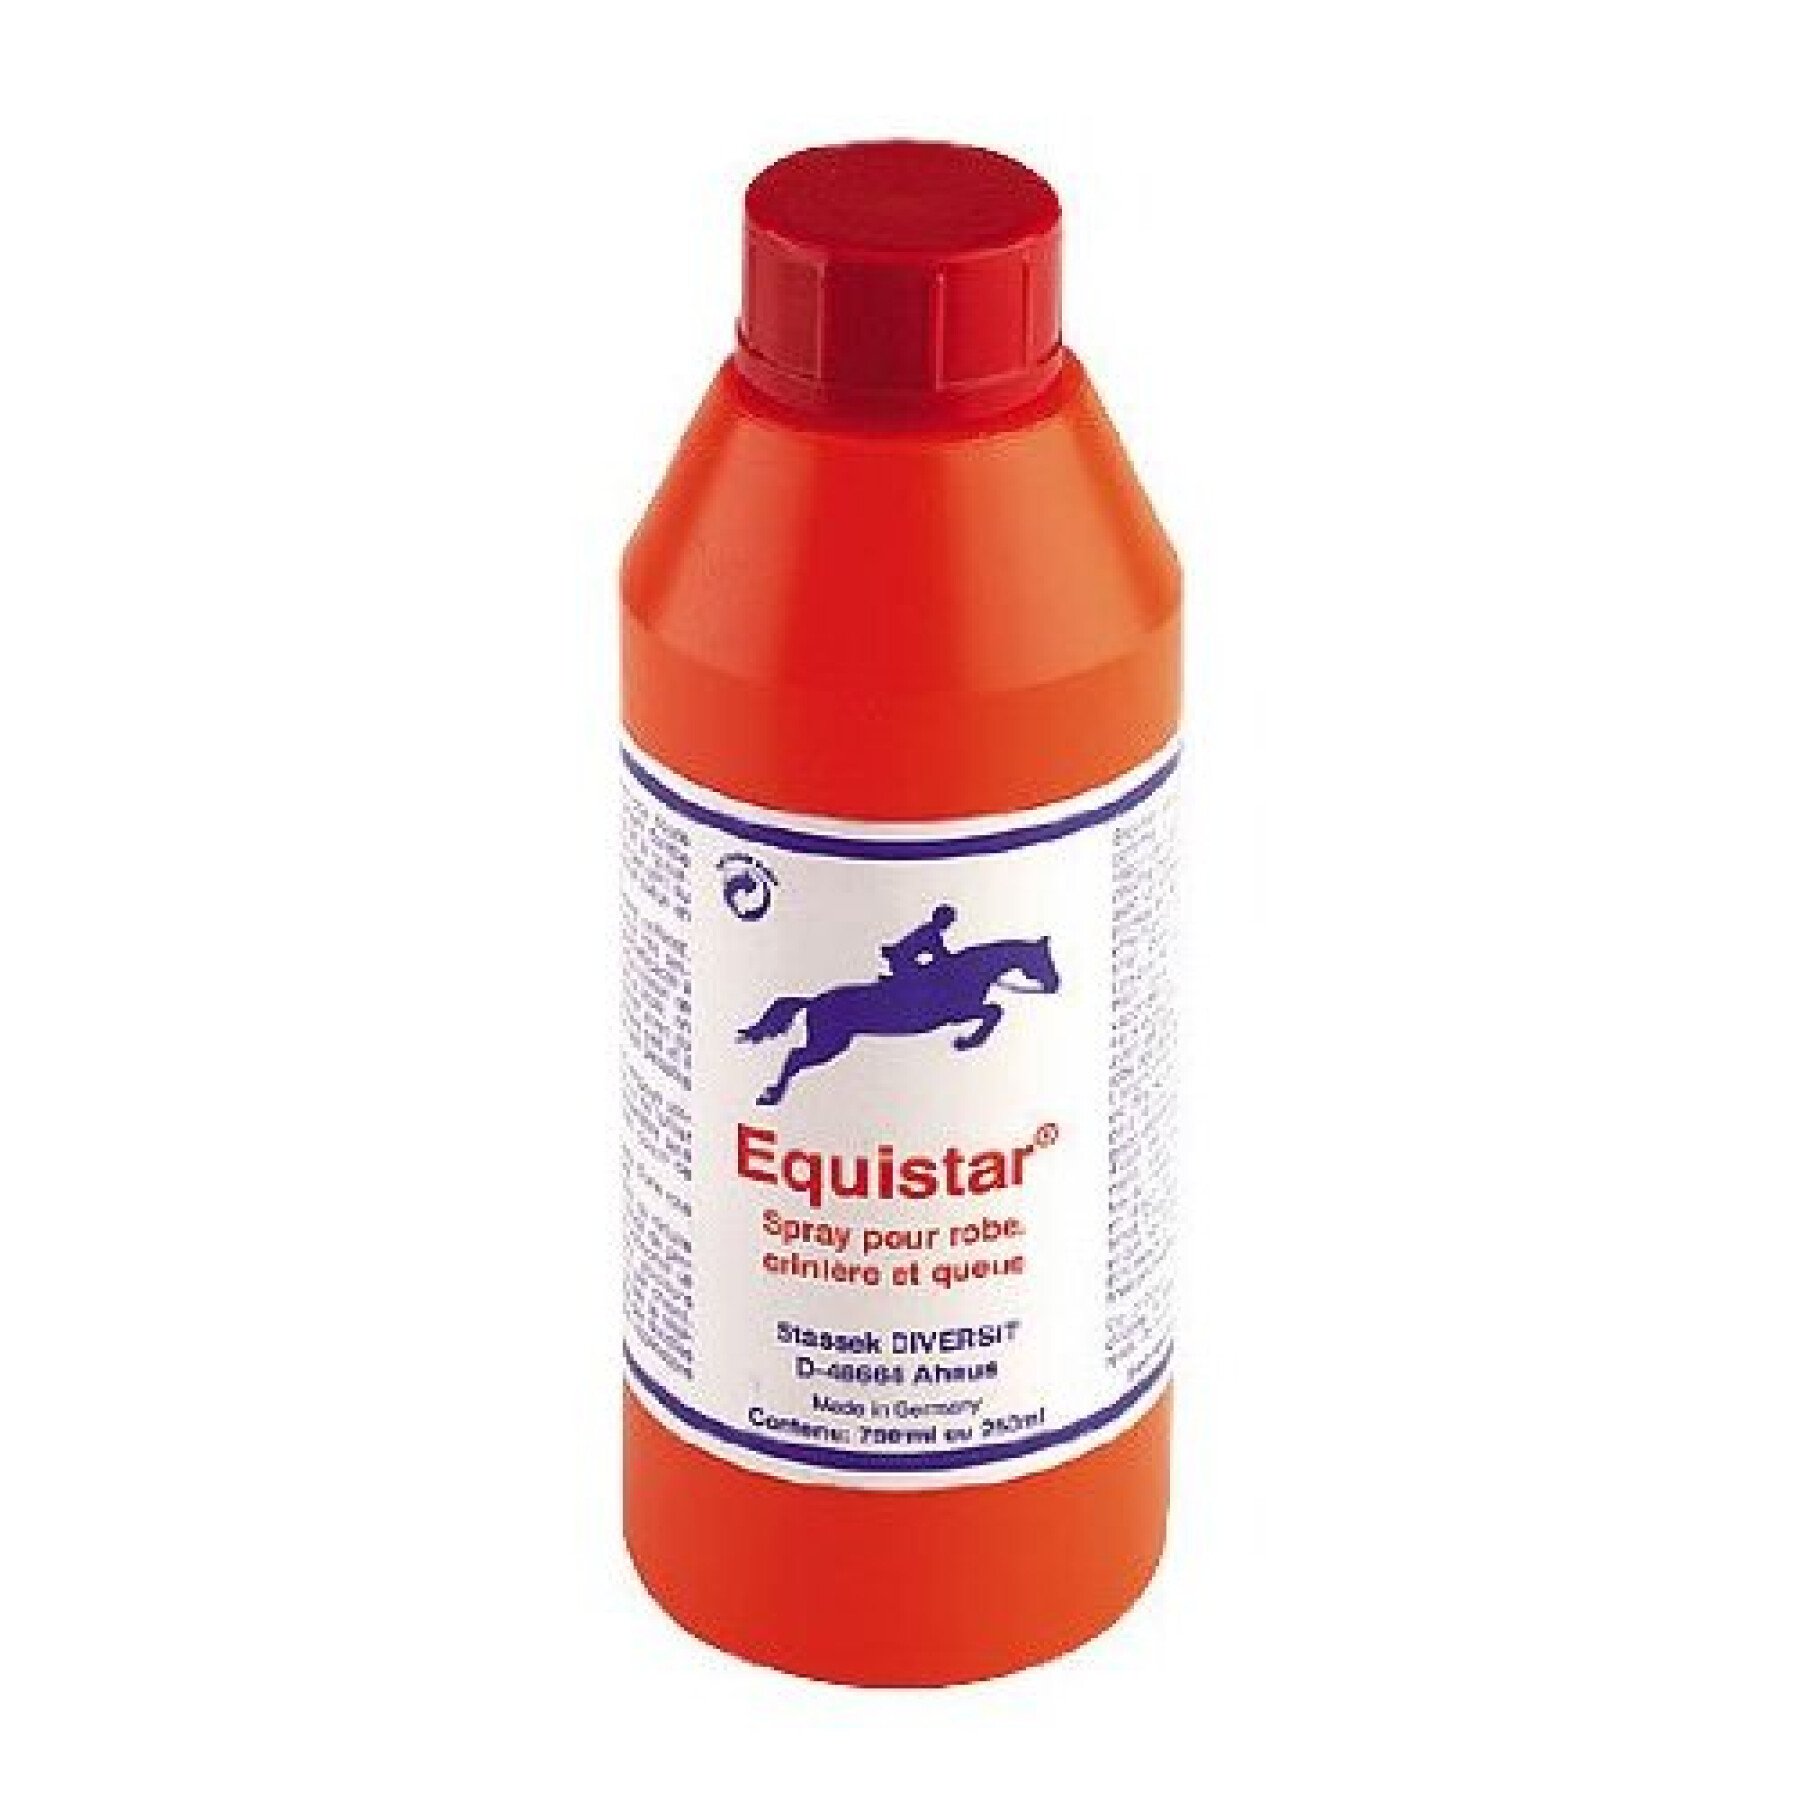 Horse coat cleaner Stassek Equistar 750 ml